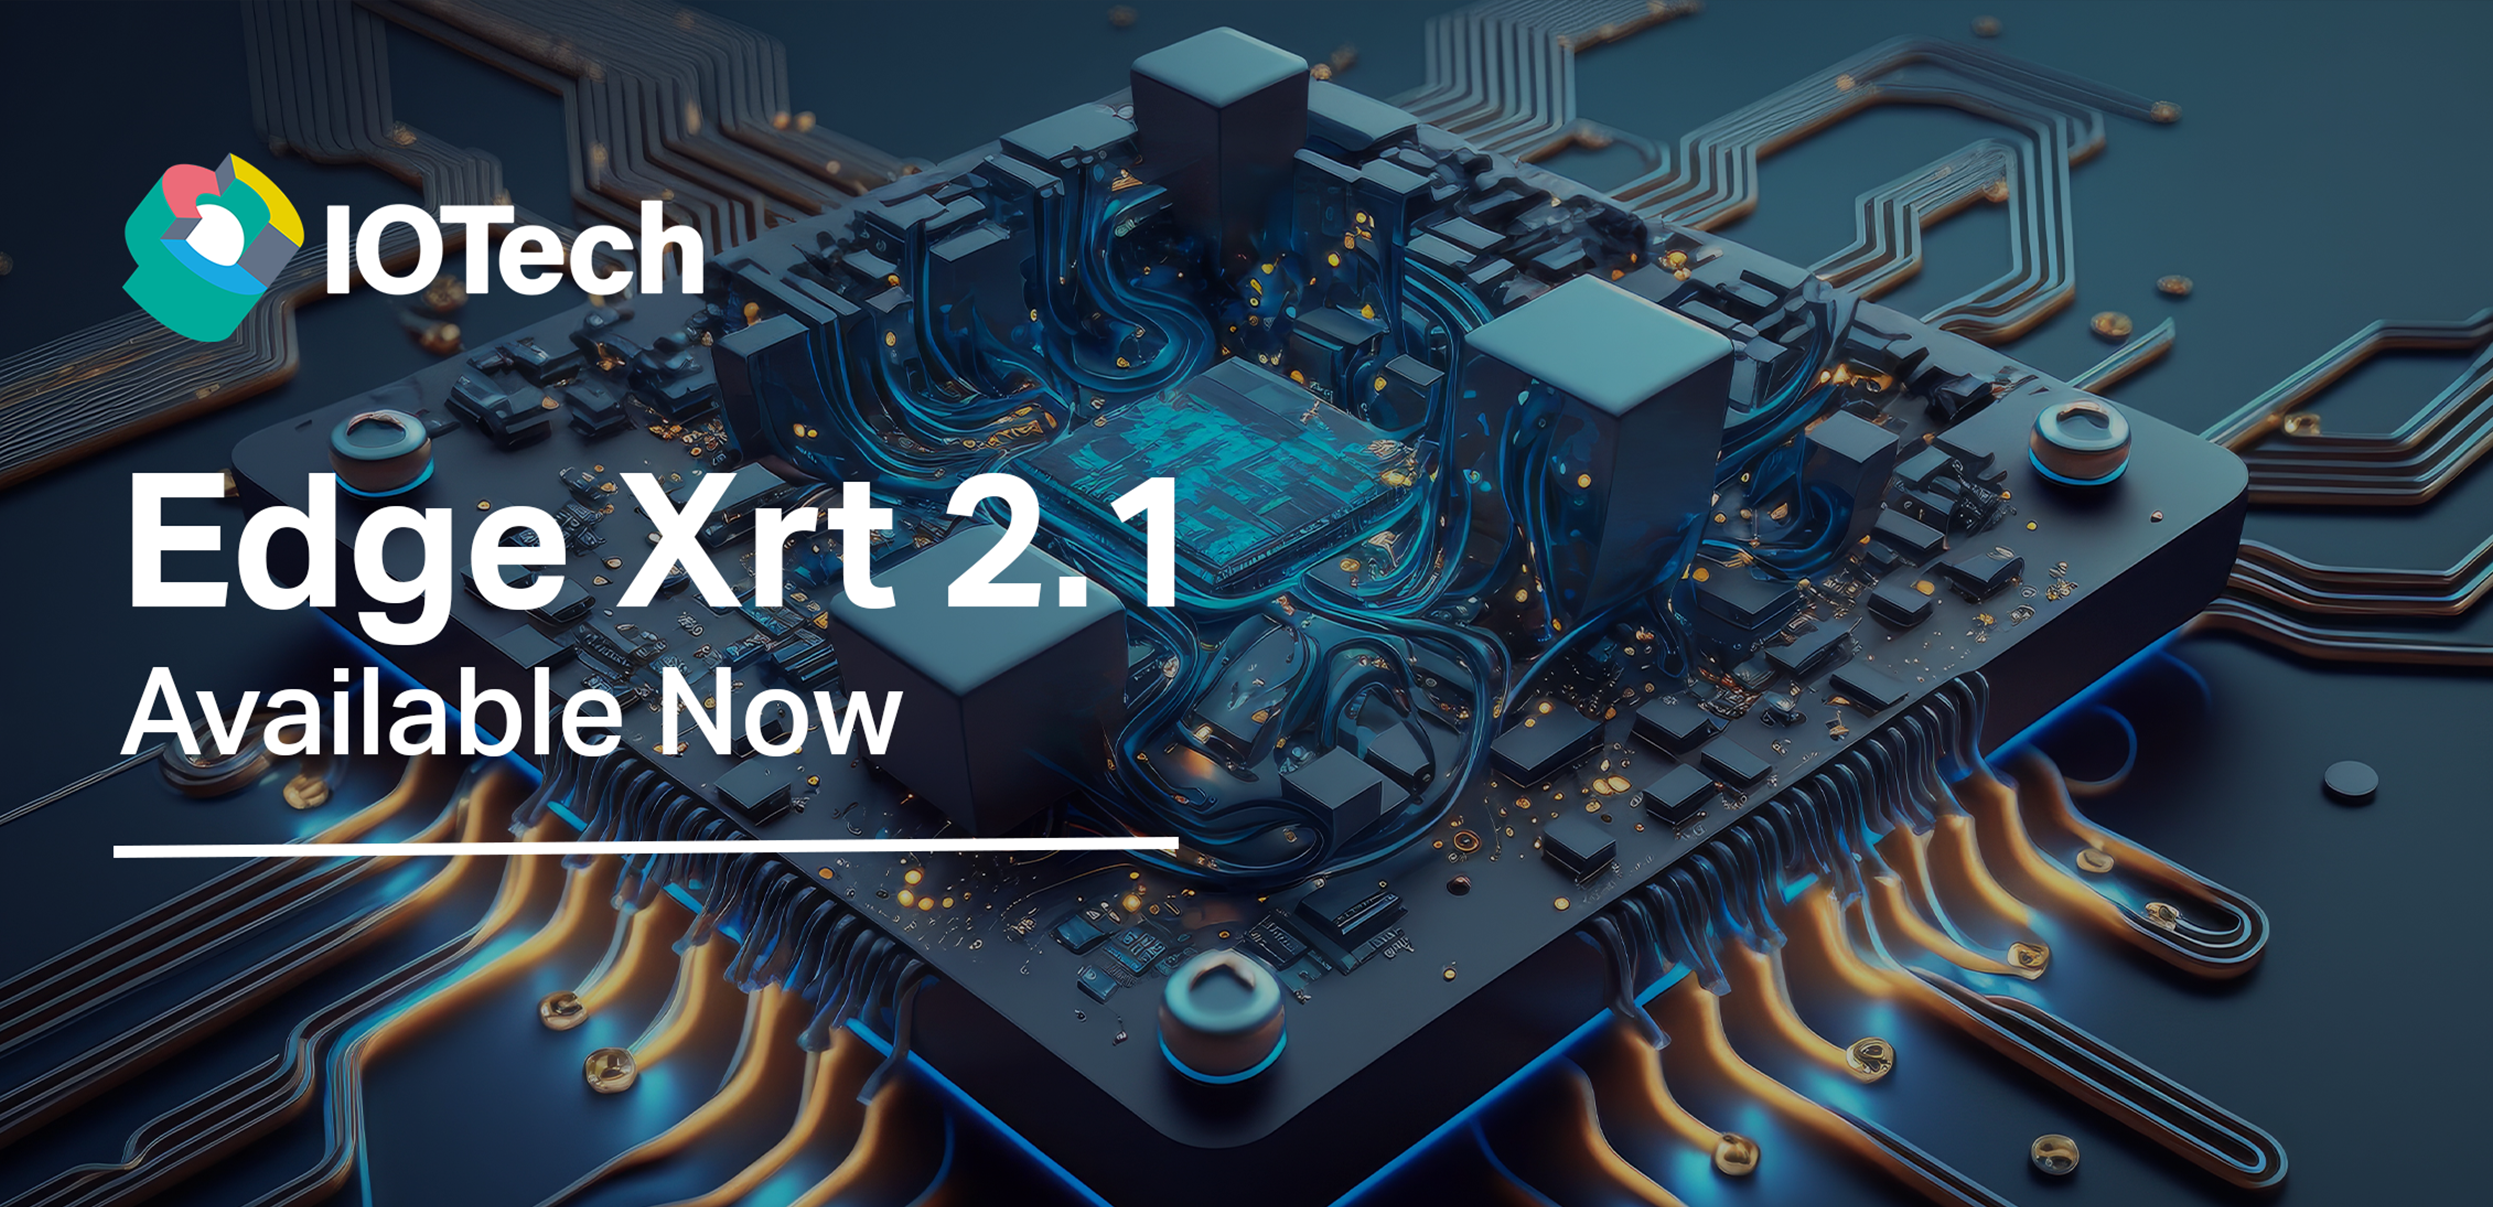 Edge Xrt 2.1 Release